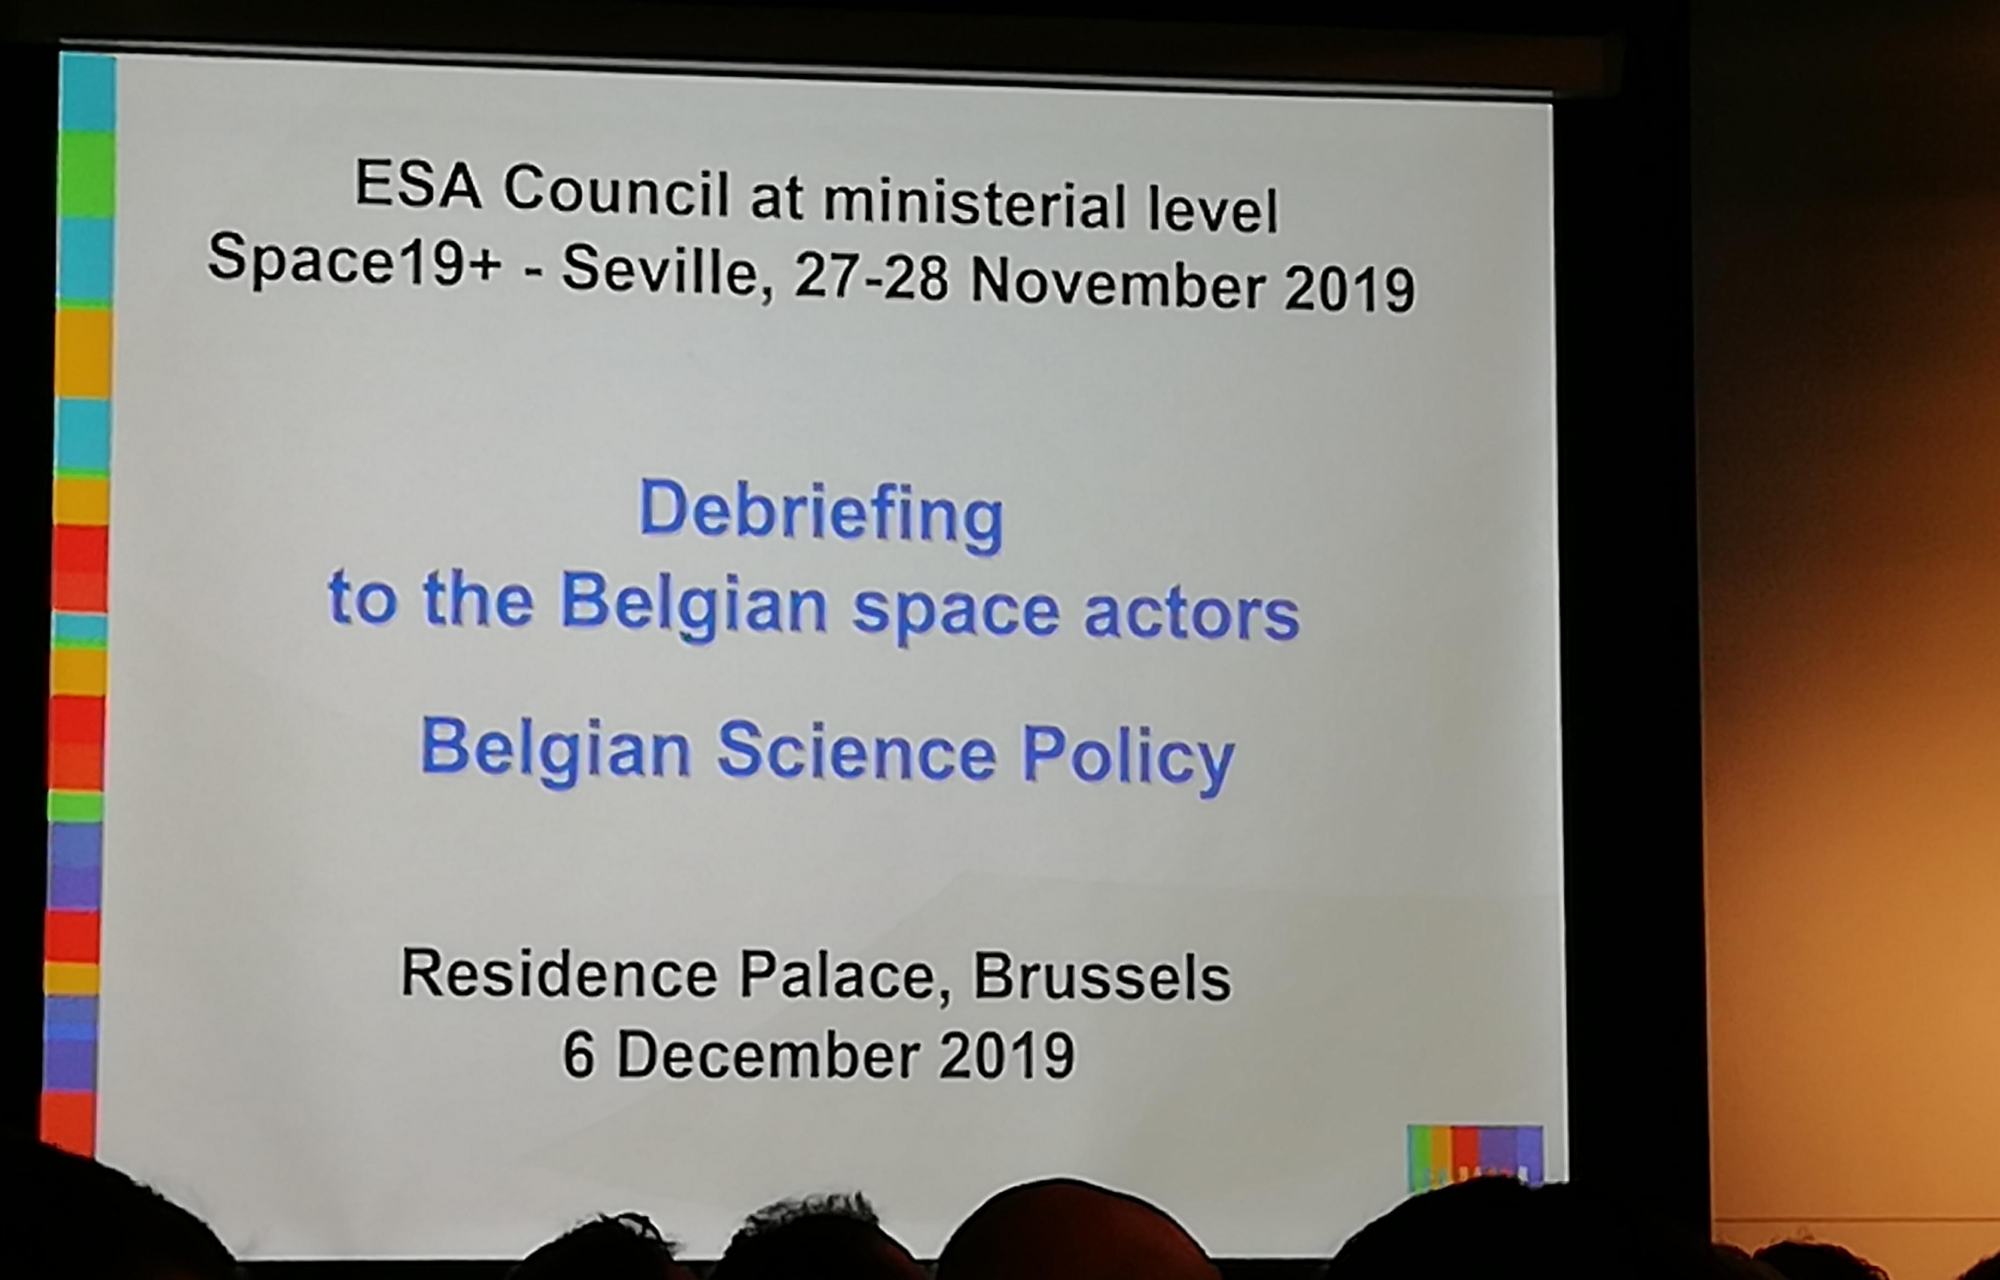 présentation des résultats du Conseil ministériel de l'ESA (27-28 novembre 2019 à Séville)